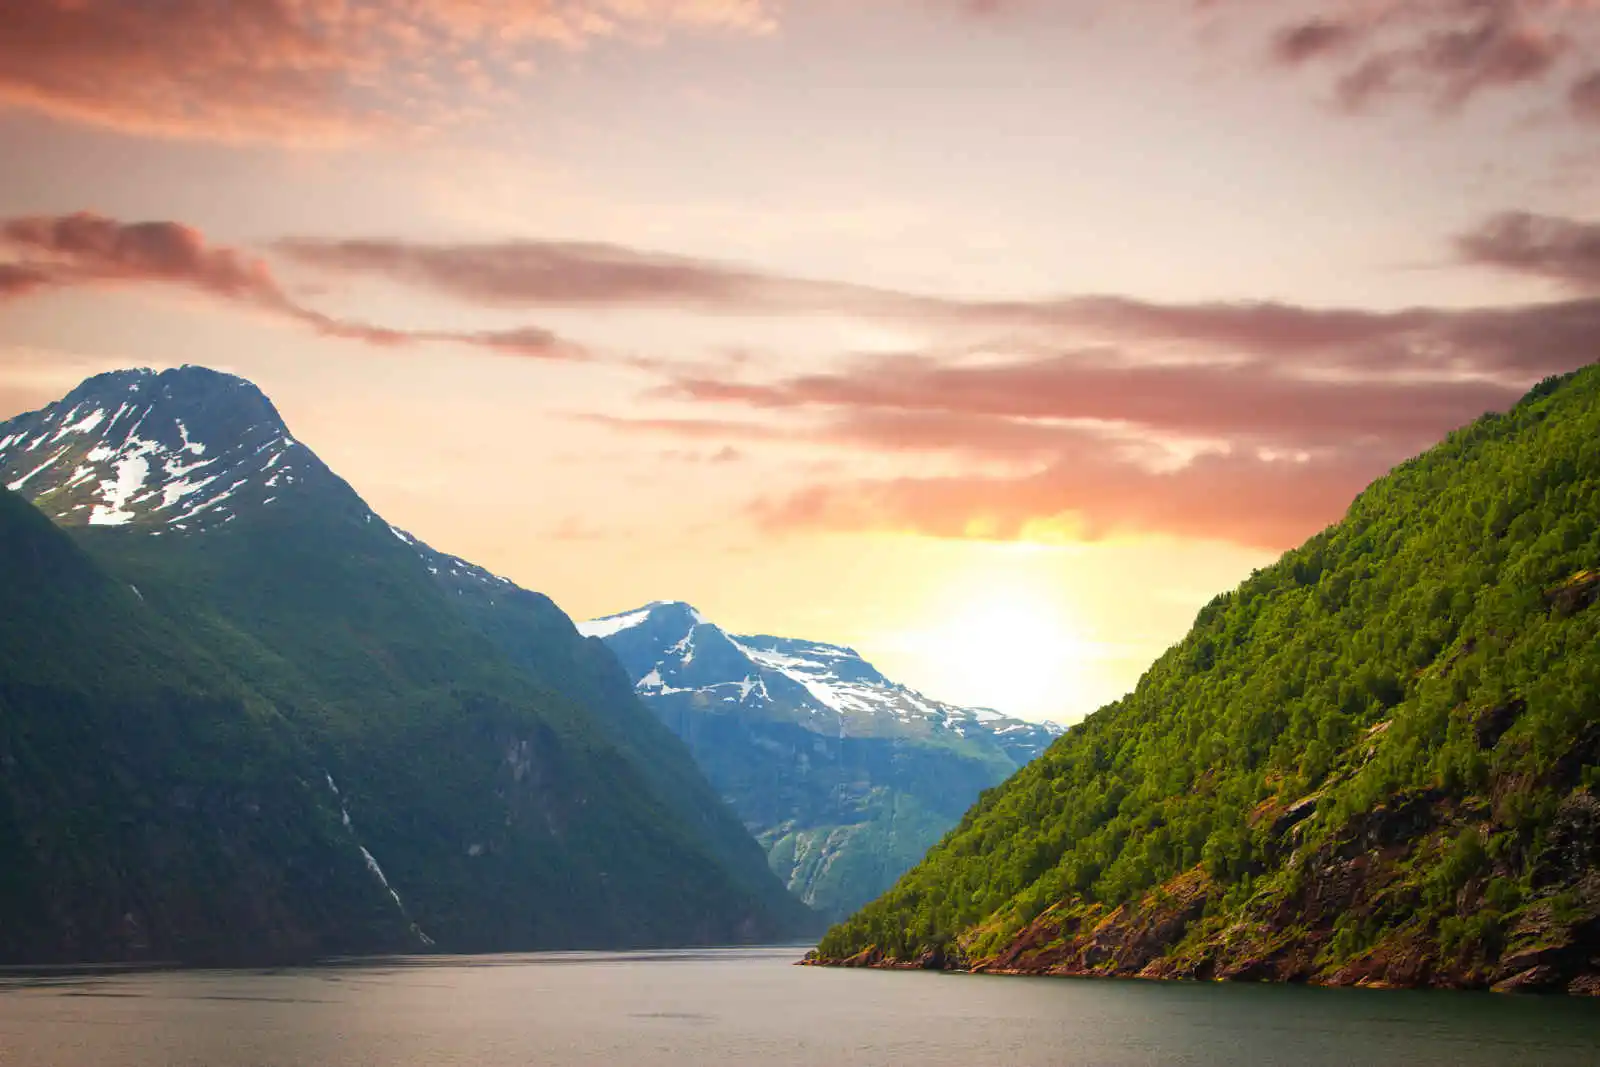 Norvège - Autotour Au Pays des Fjords